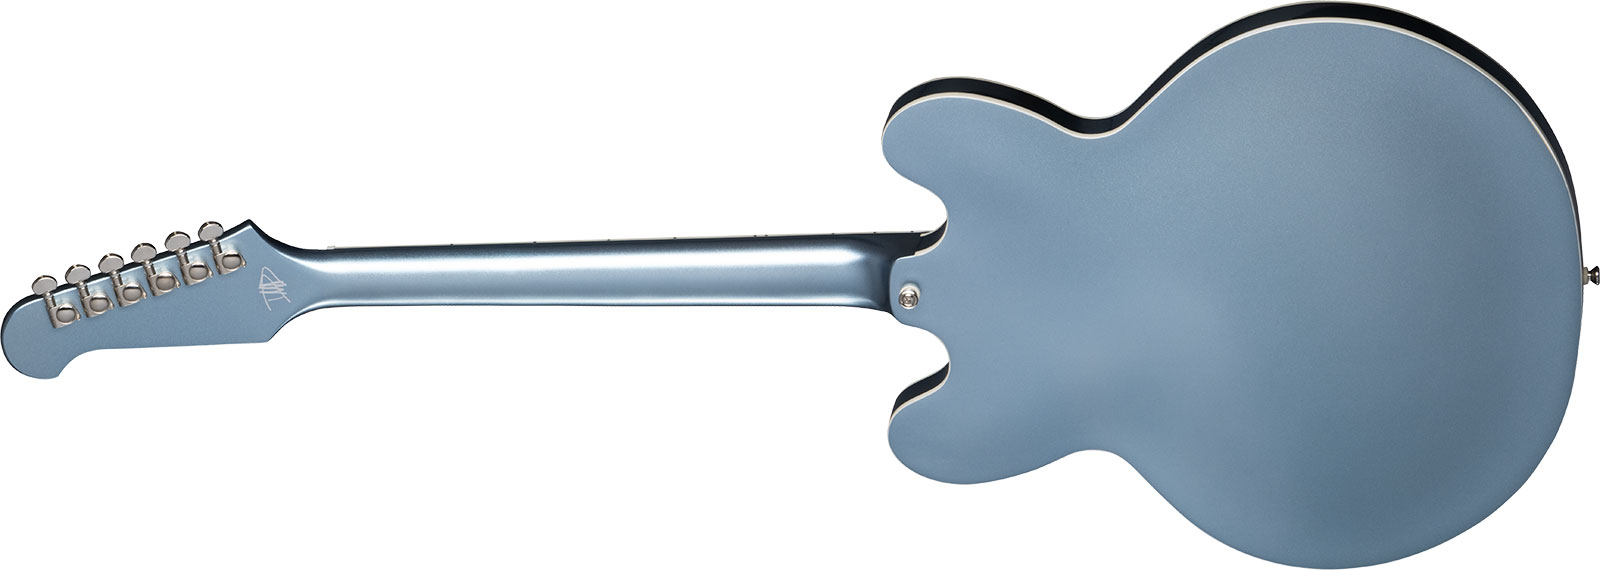 Epiphone Dave Grohl Dg-335 Signature 2h Ht Lau - Pelham Blue - Guitare Électrique 1/2 Caisse - Variation 1